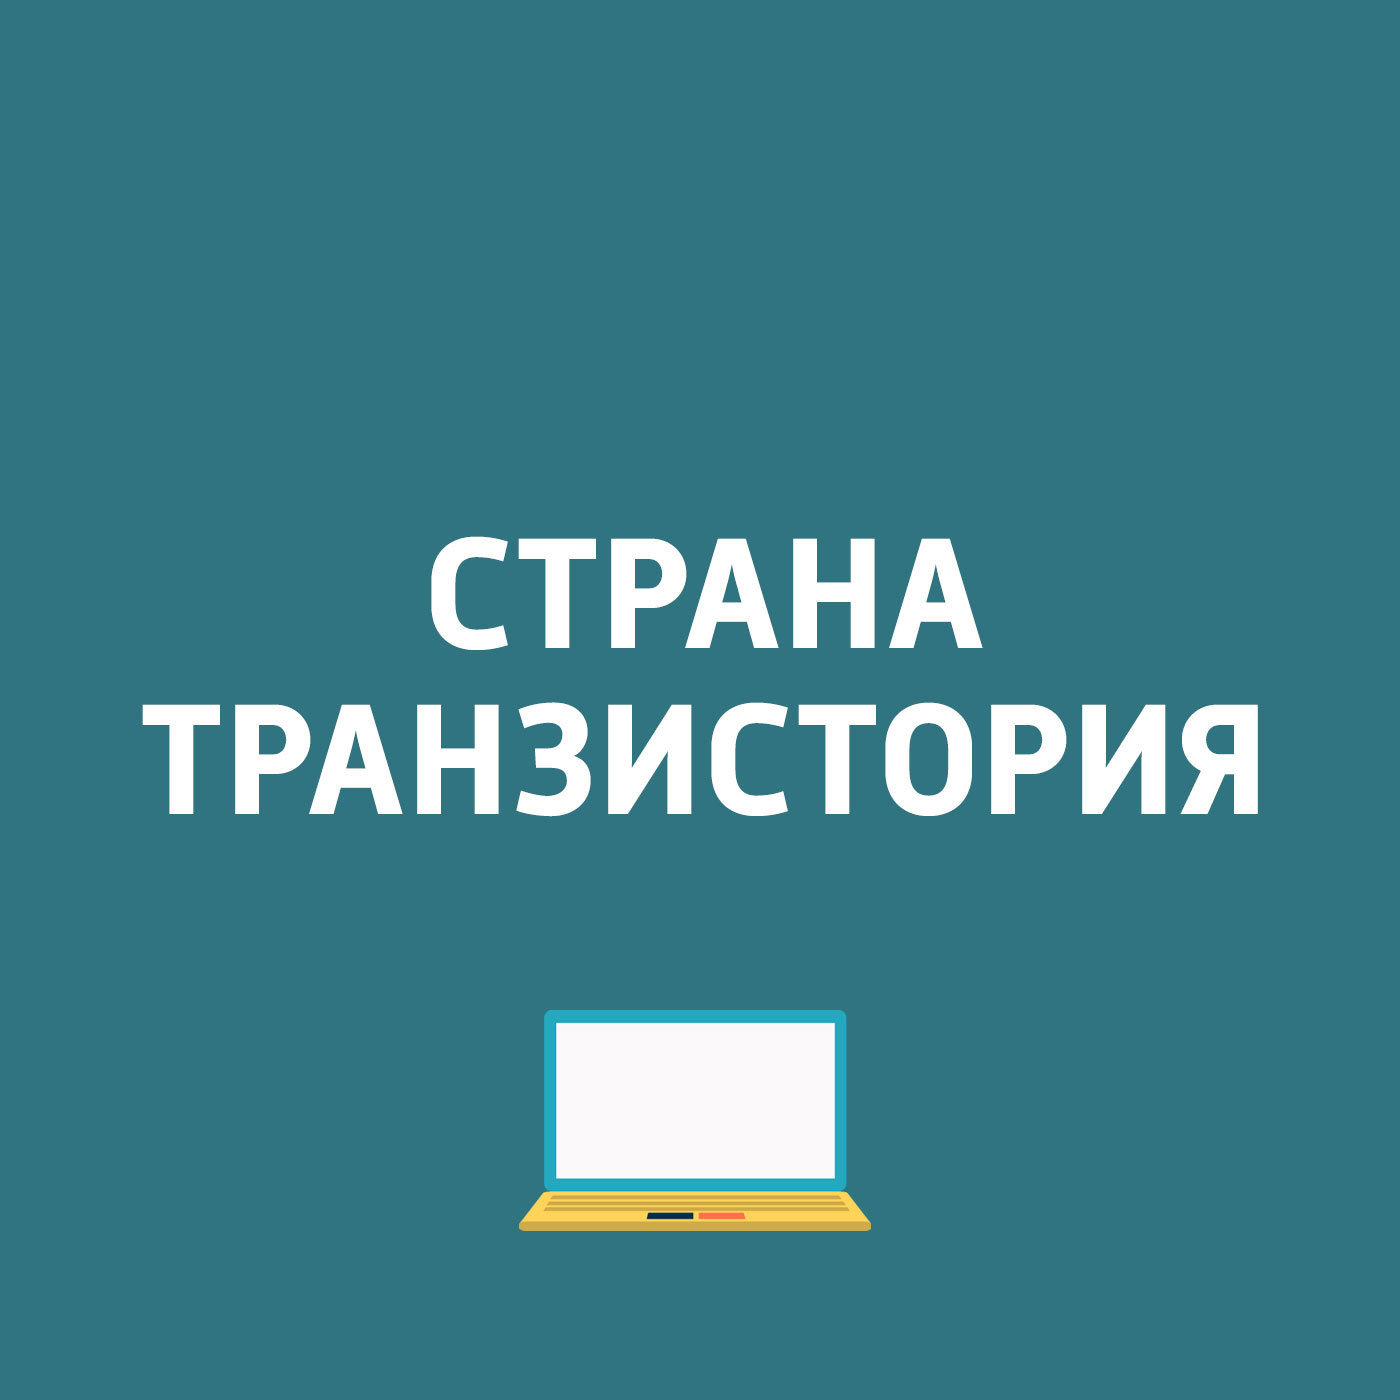 Картаев Павел Samsung Gear Fit2; Яндекс переведет текст с картинки; «Почта России» будет доставлять уведомления по e-mail....